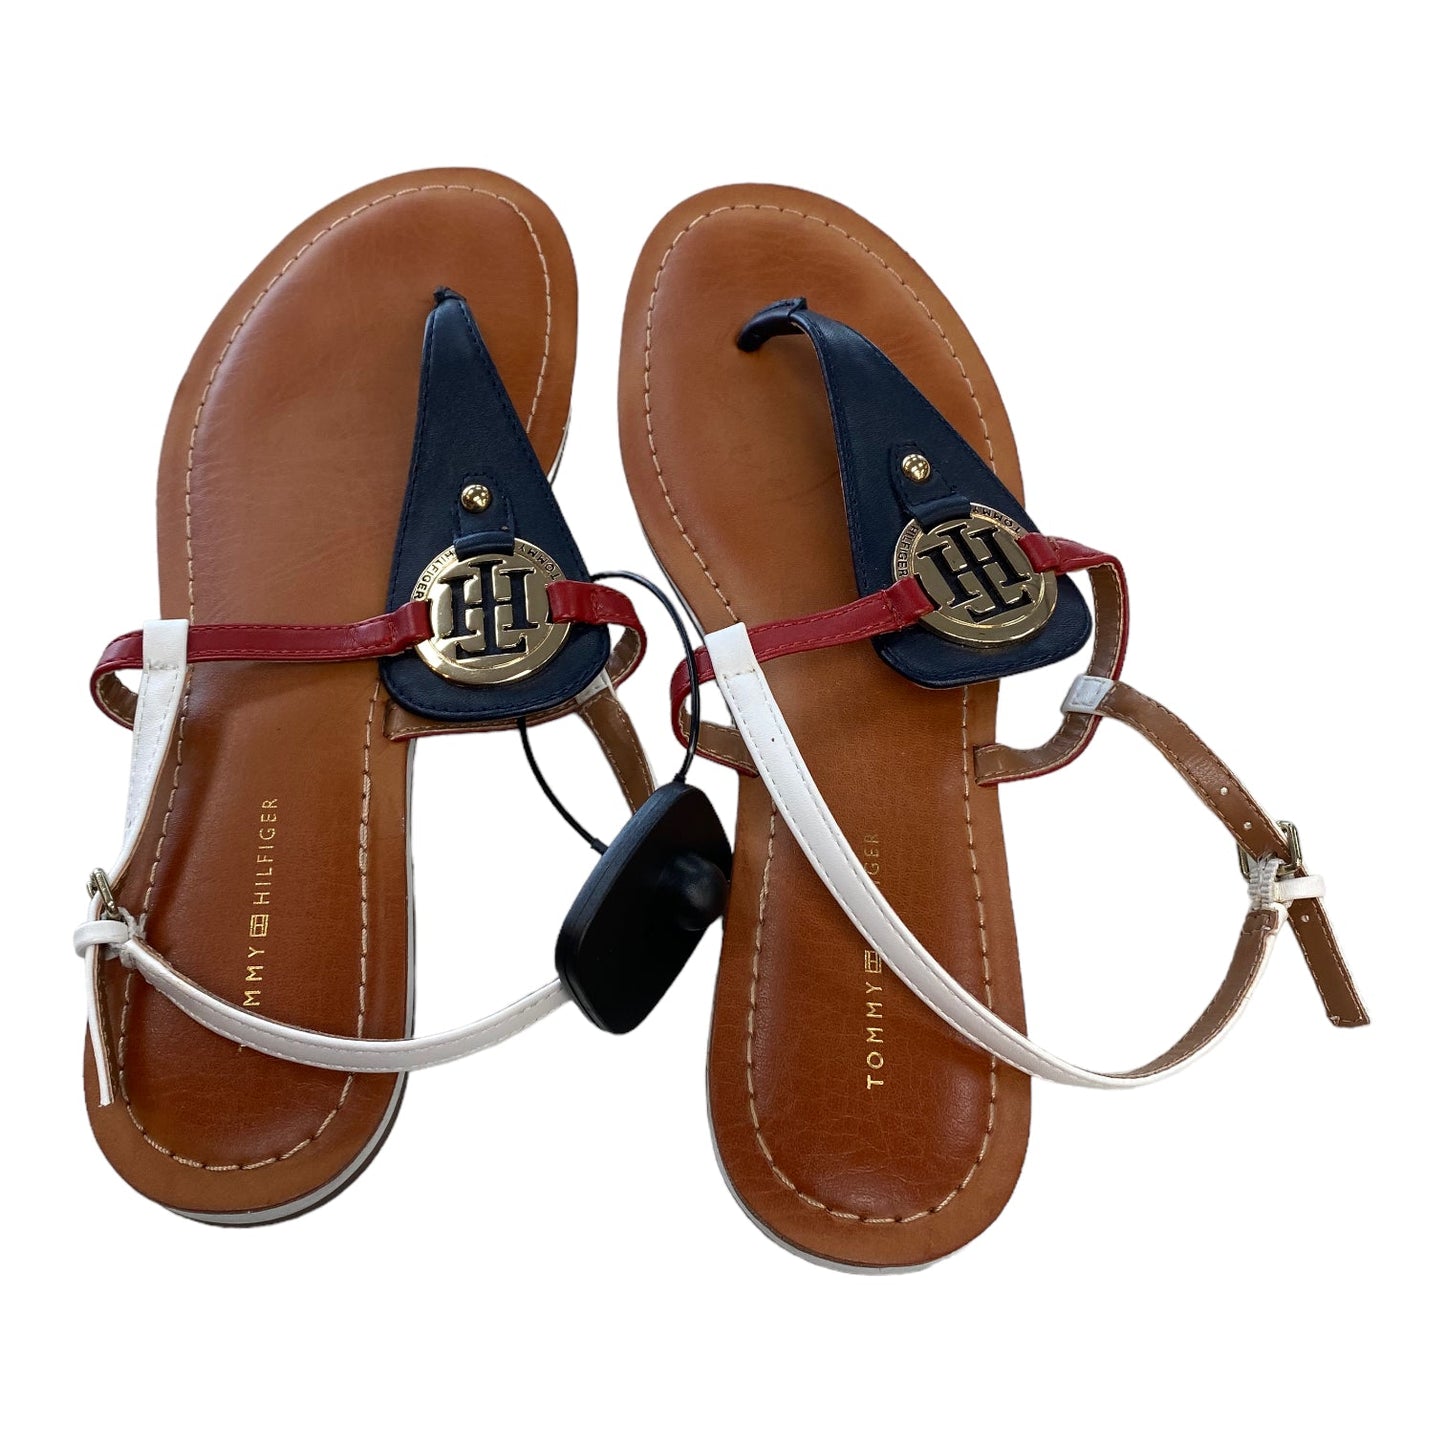 Multi-colored Sandals Flip Flops Tommy Hilfiger, Size 9